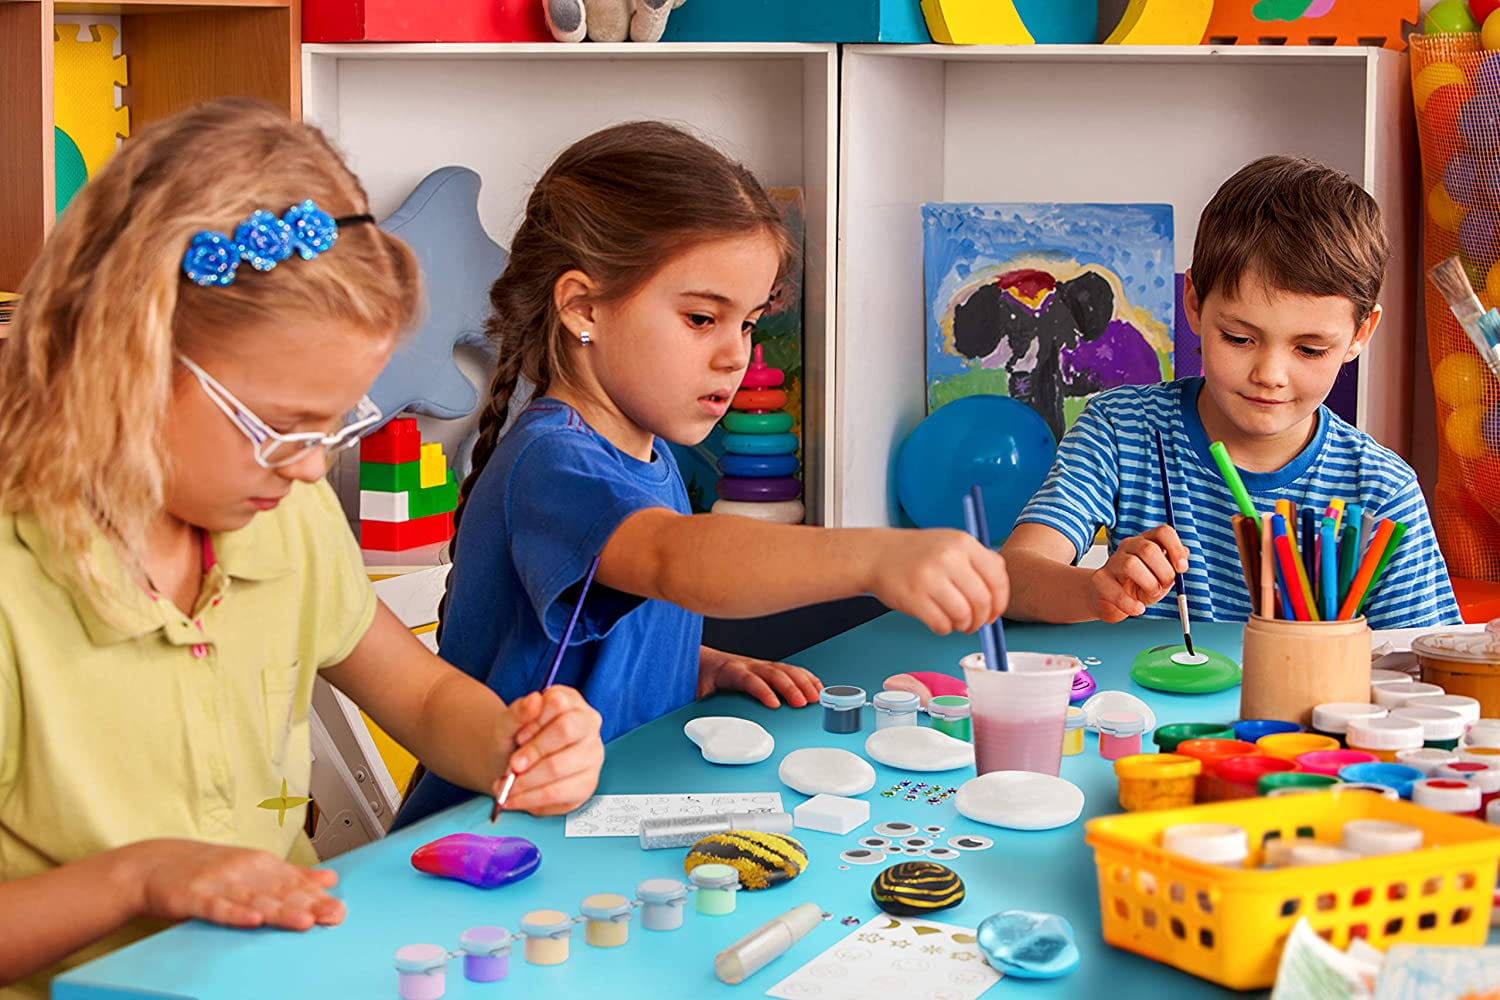 Kids Rock Painting Kit - Arts & Crafts Set Ages 6-12 Unisex